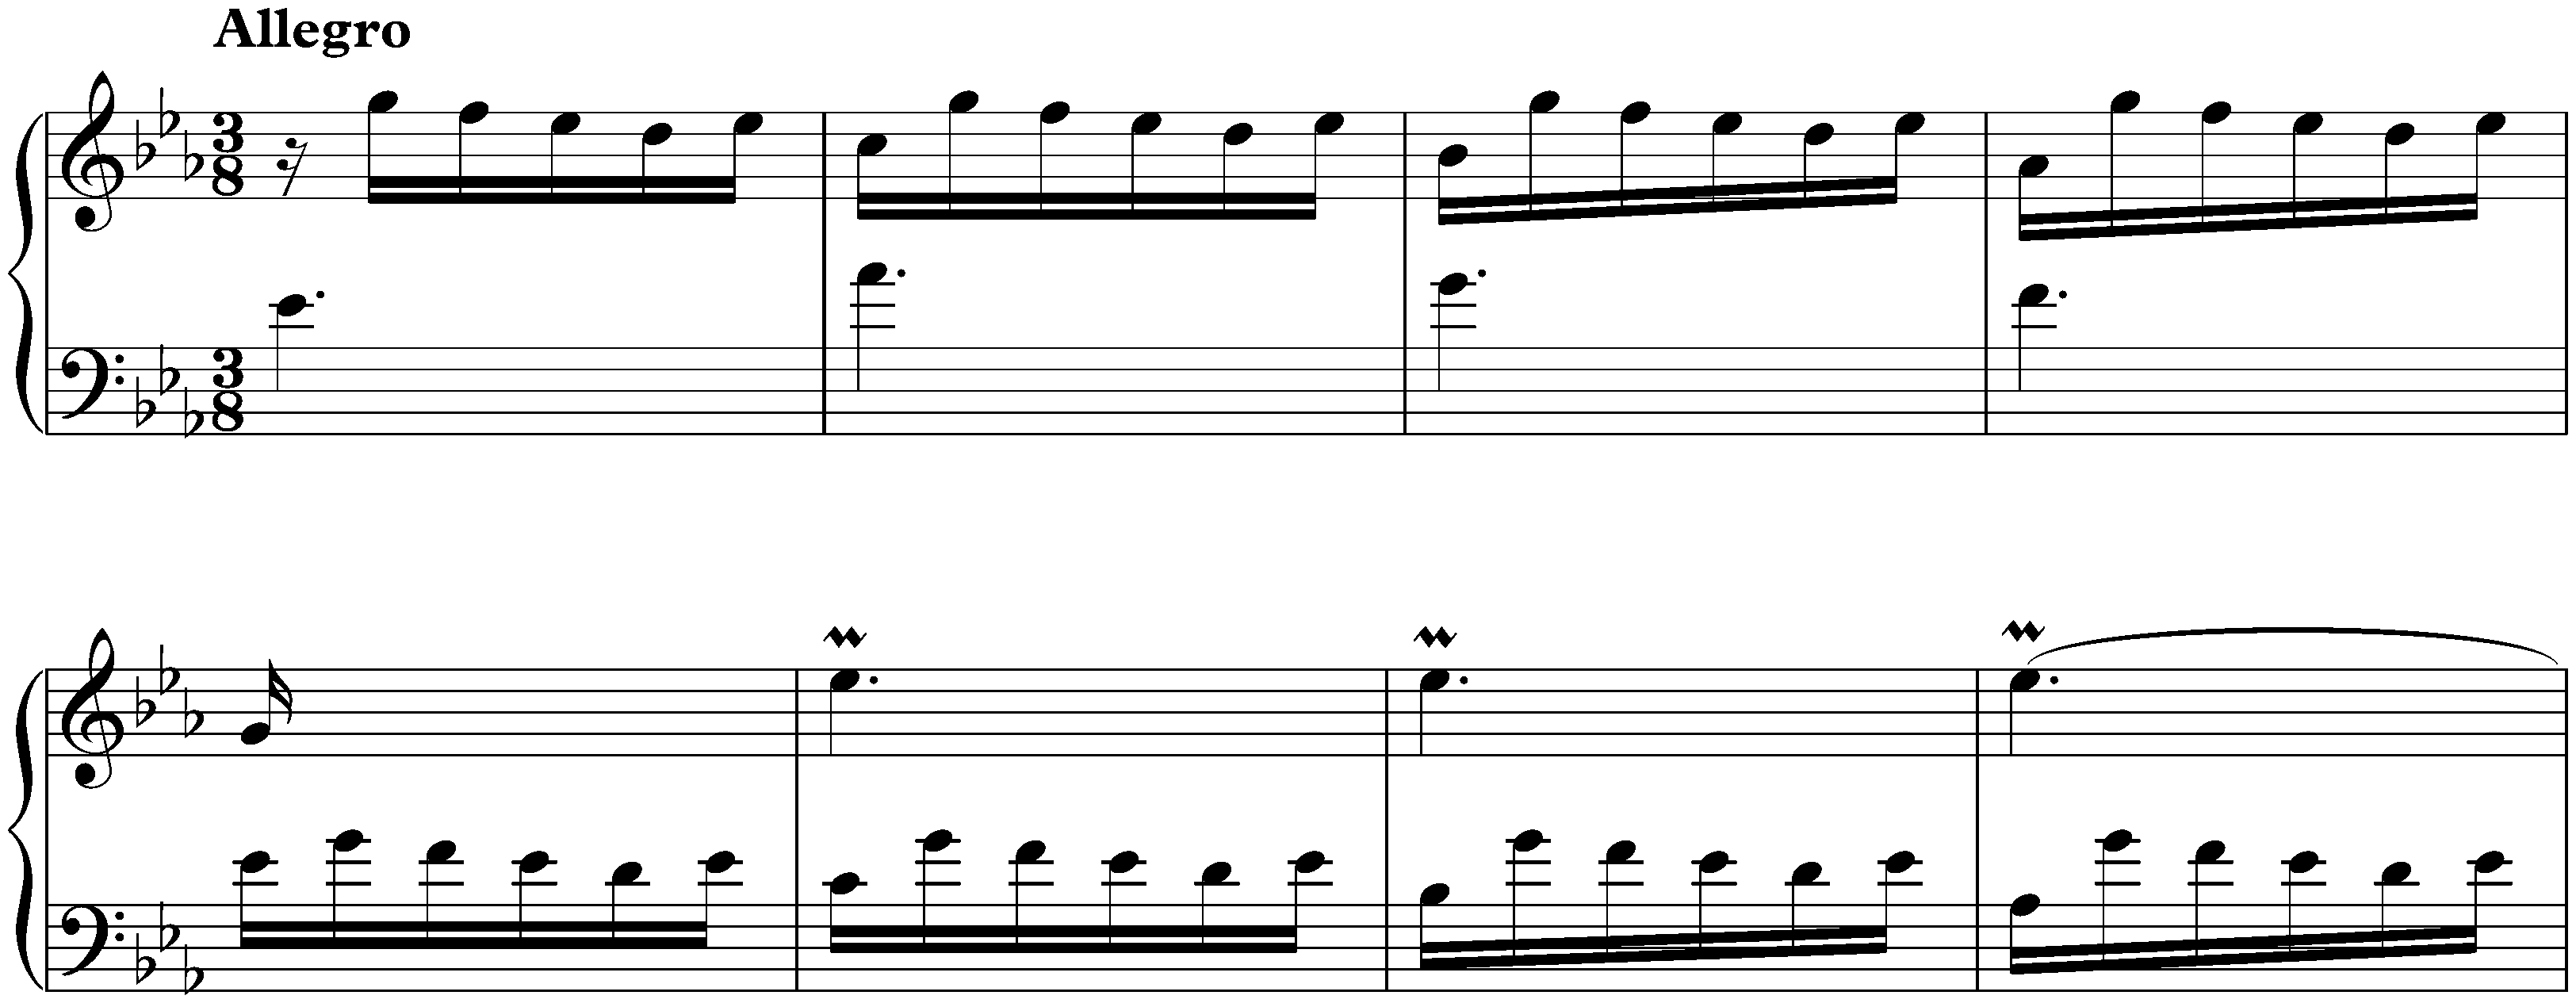 Sonata in E-flat major, K. 307